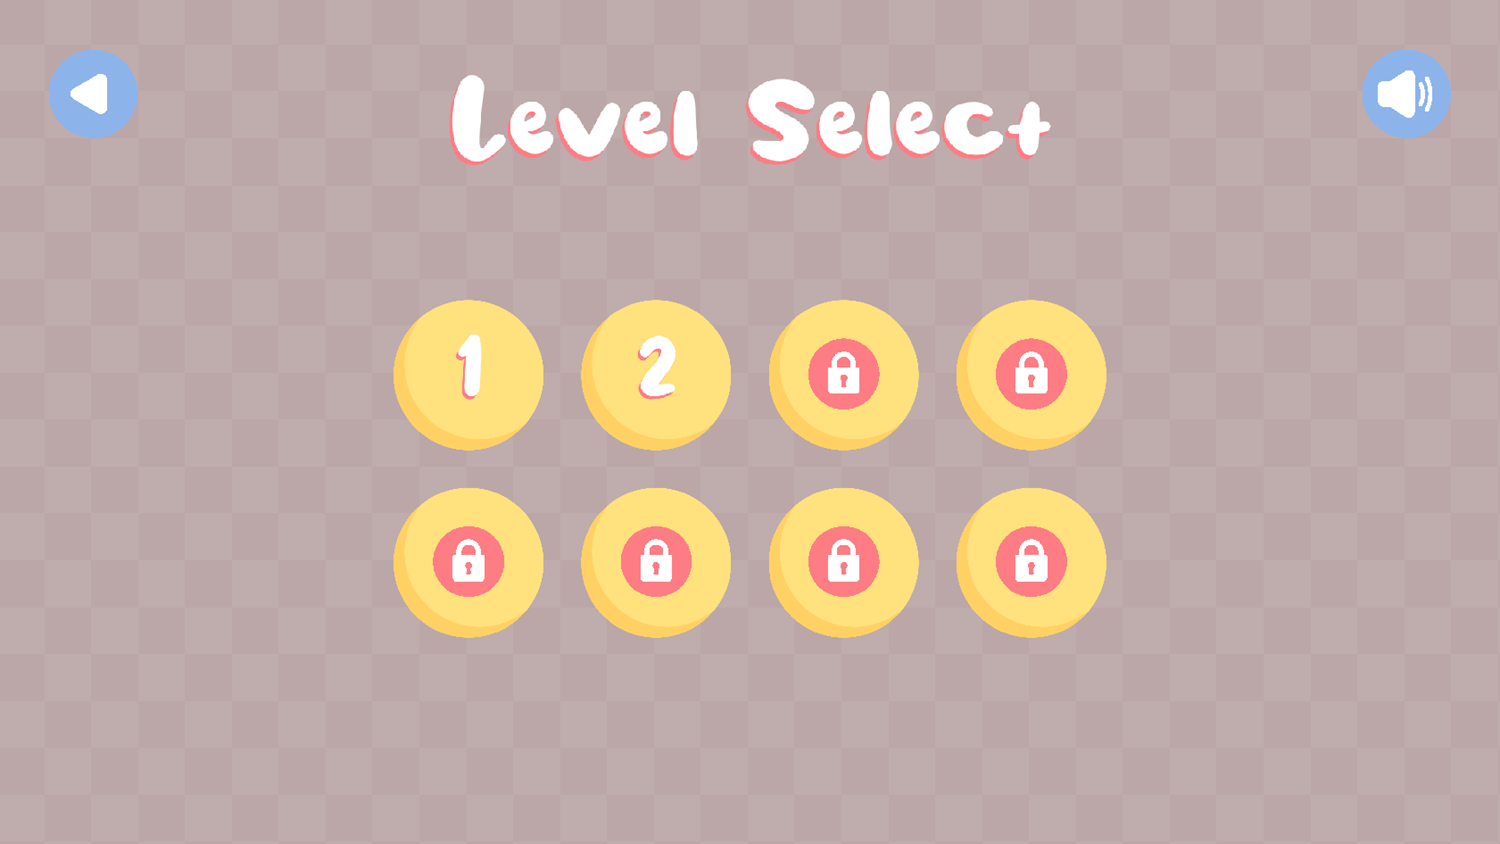 Memory Emoji Game Level Select Screenshot.